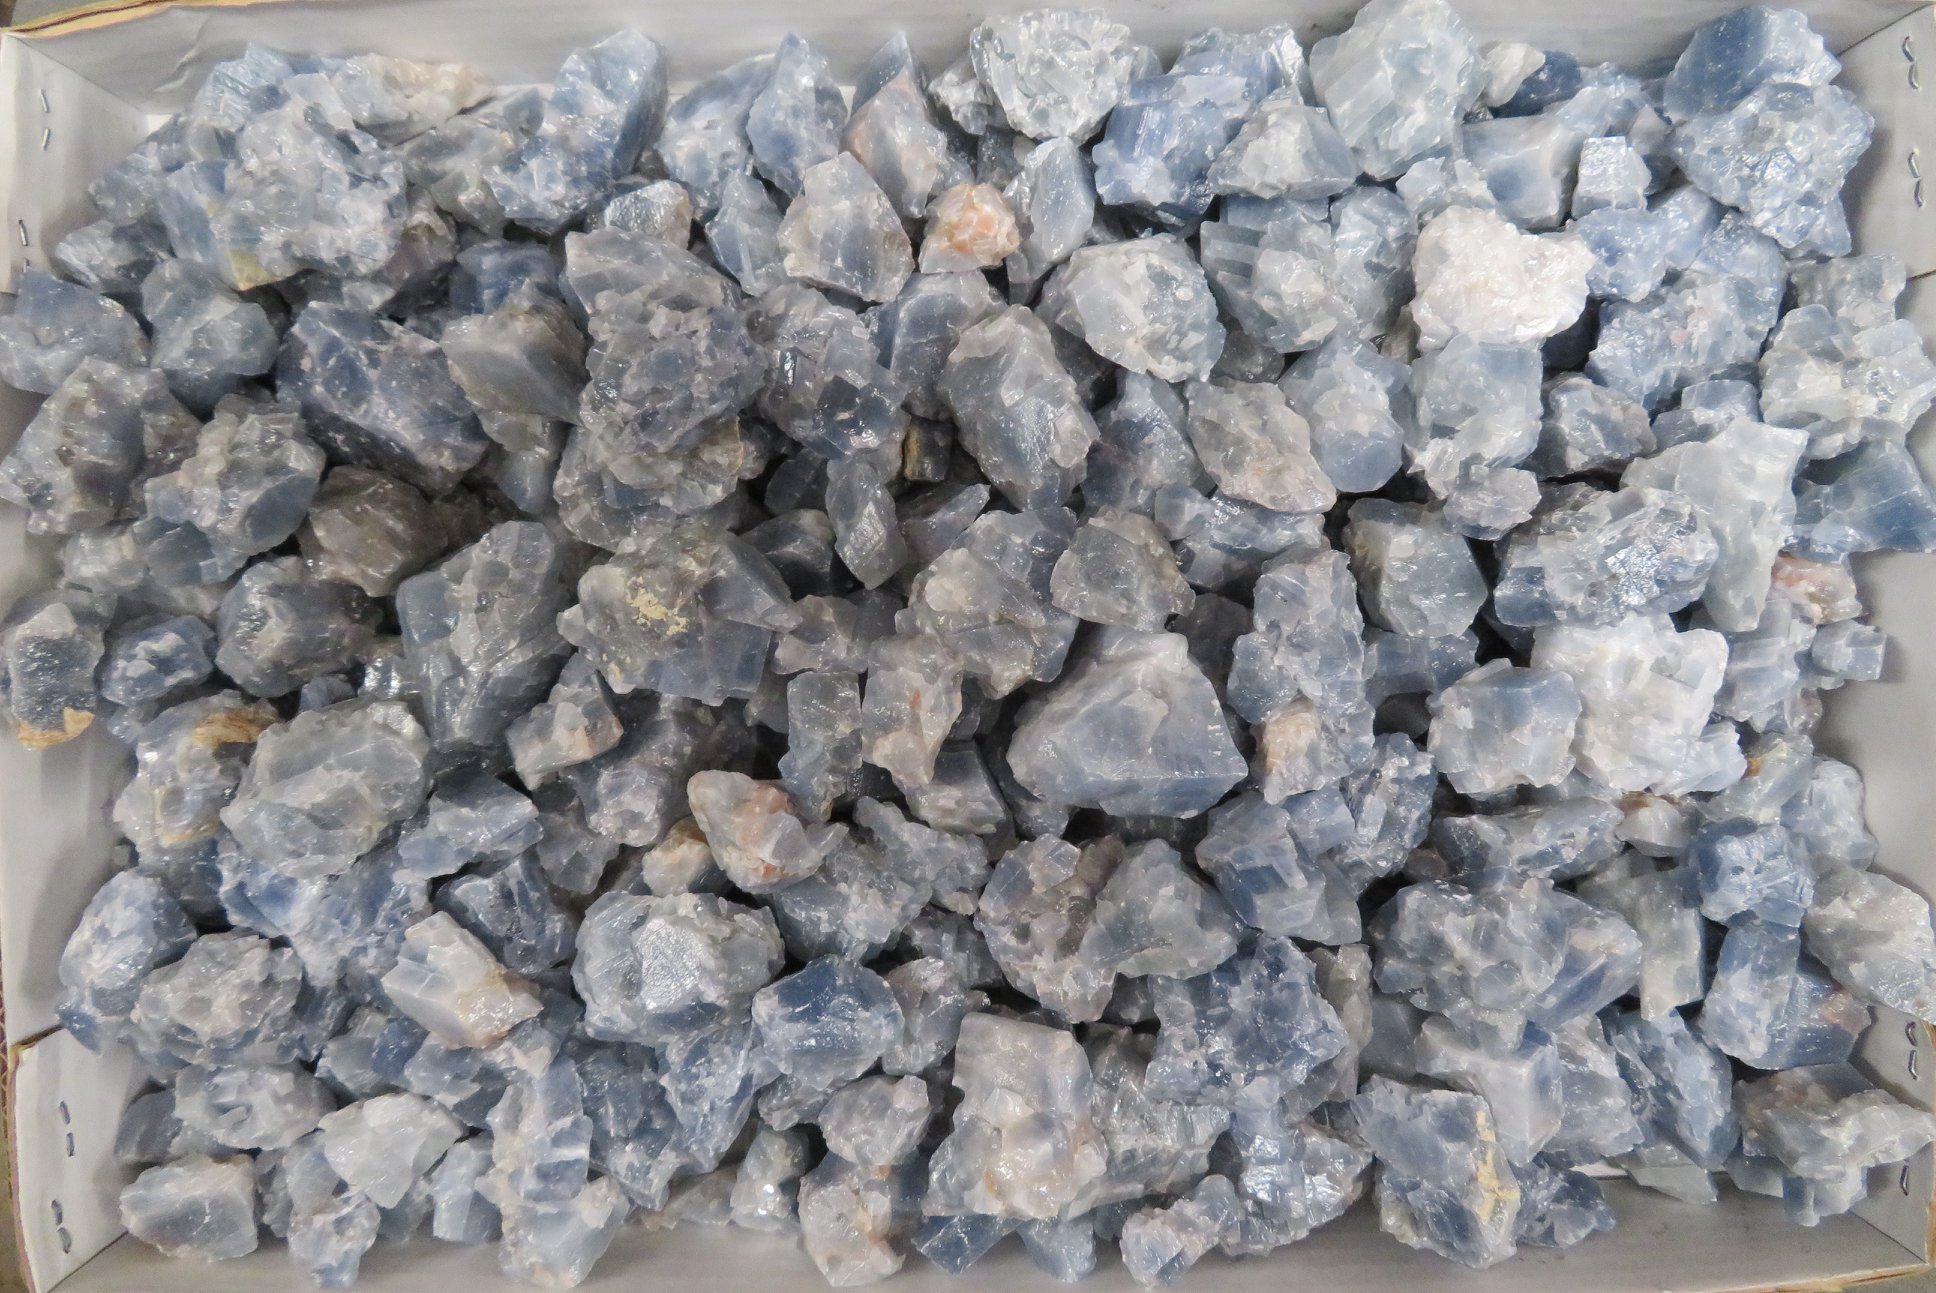 Blue Calcite Specimens